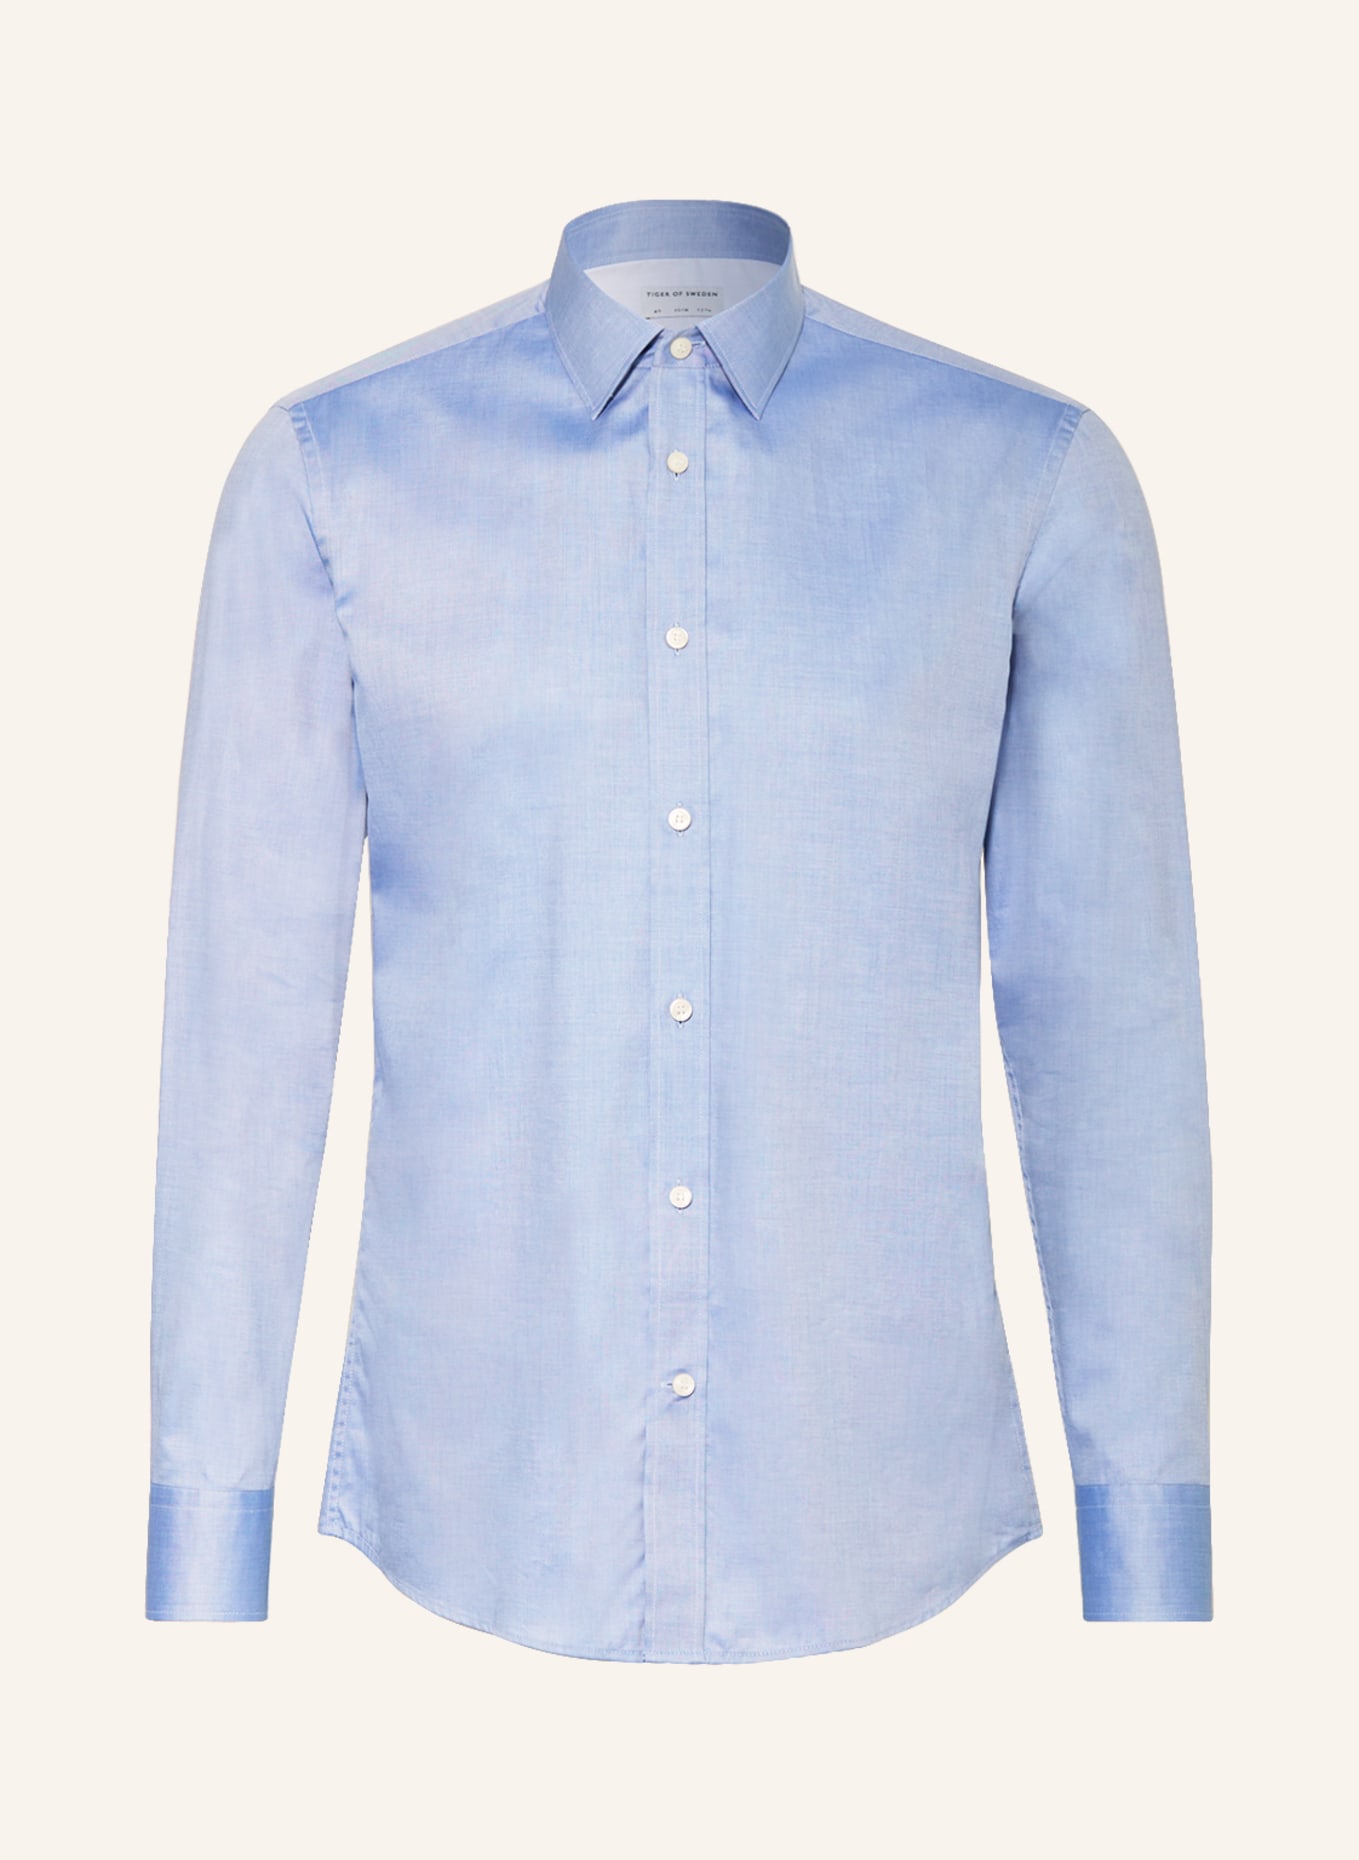 TIGER OF SWEDEN Shirt ADLEY slim fit, Color: LIGHT BLUE (Image 1)